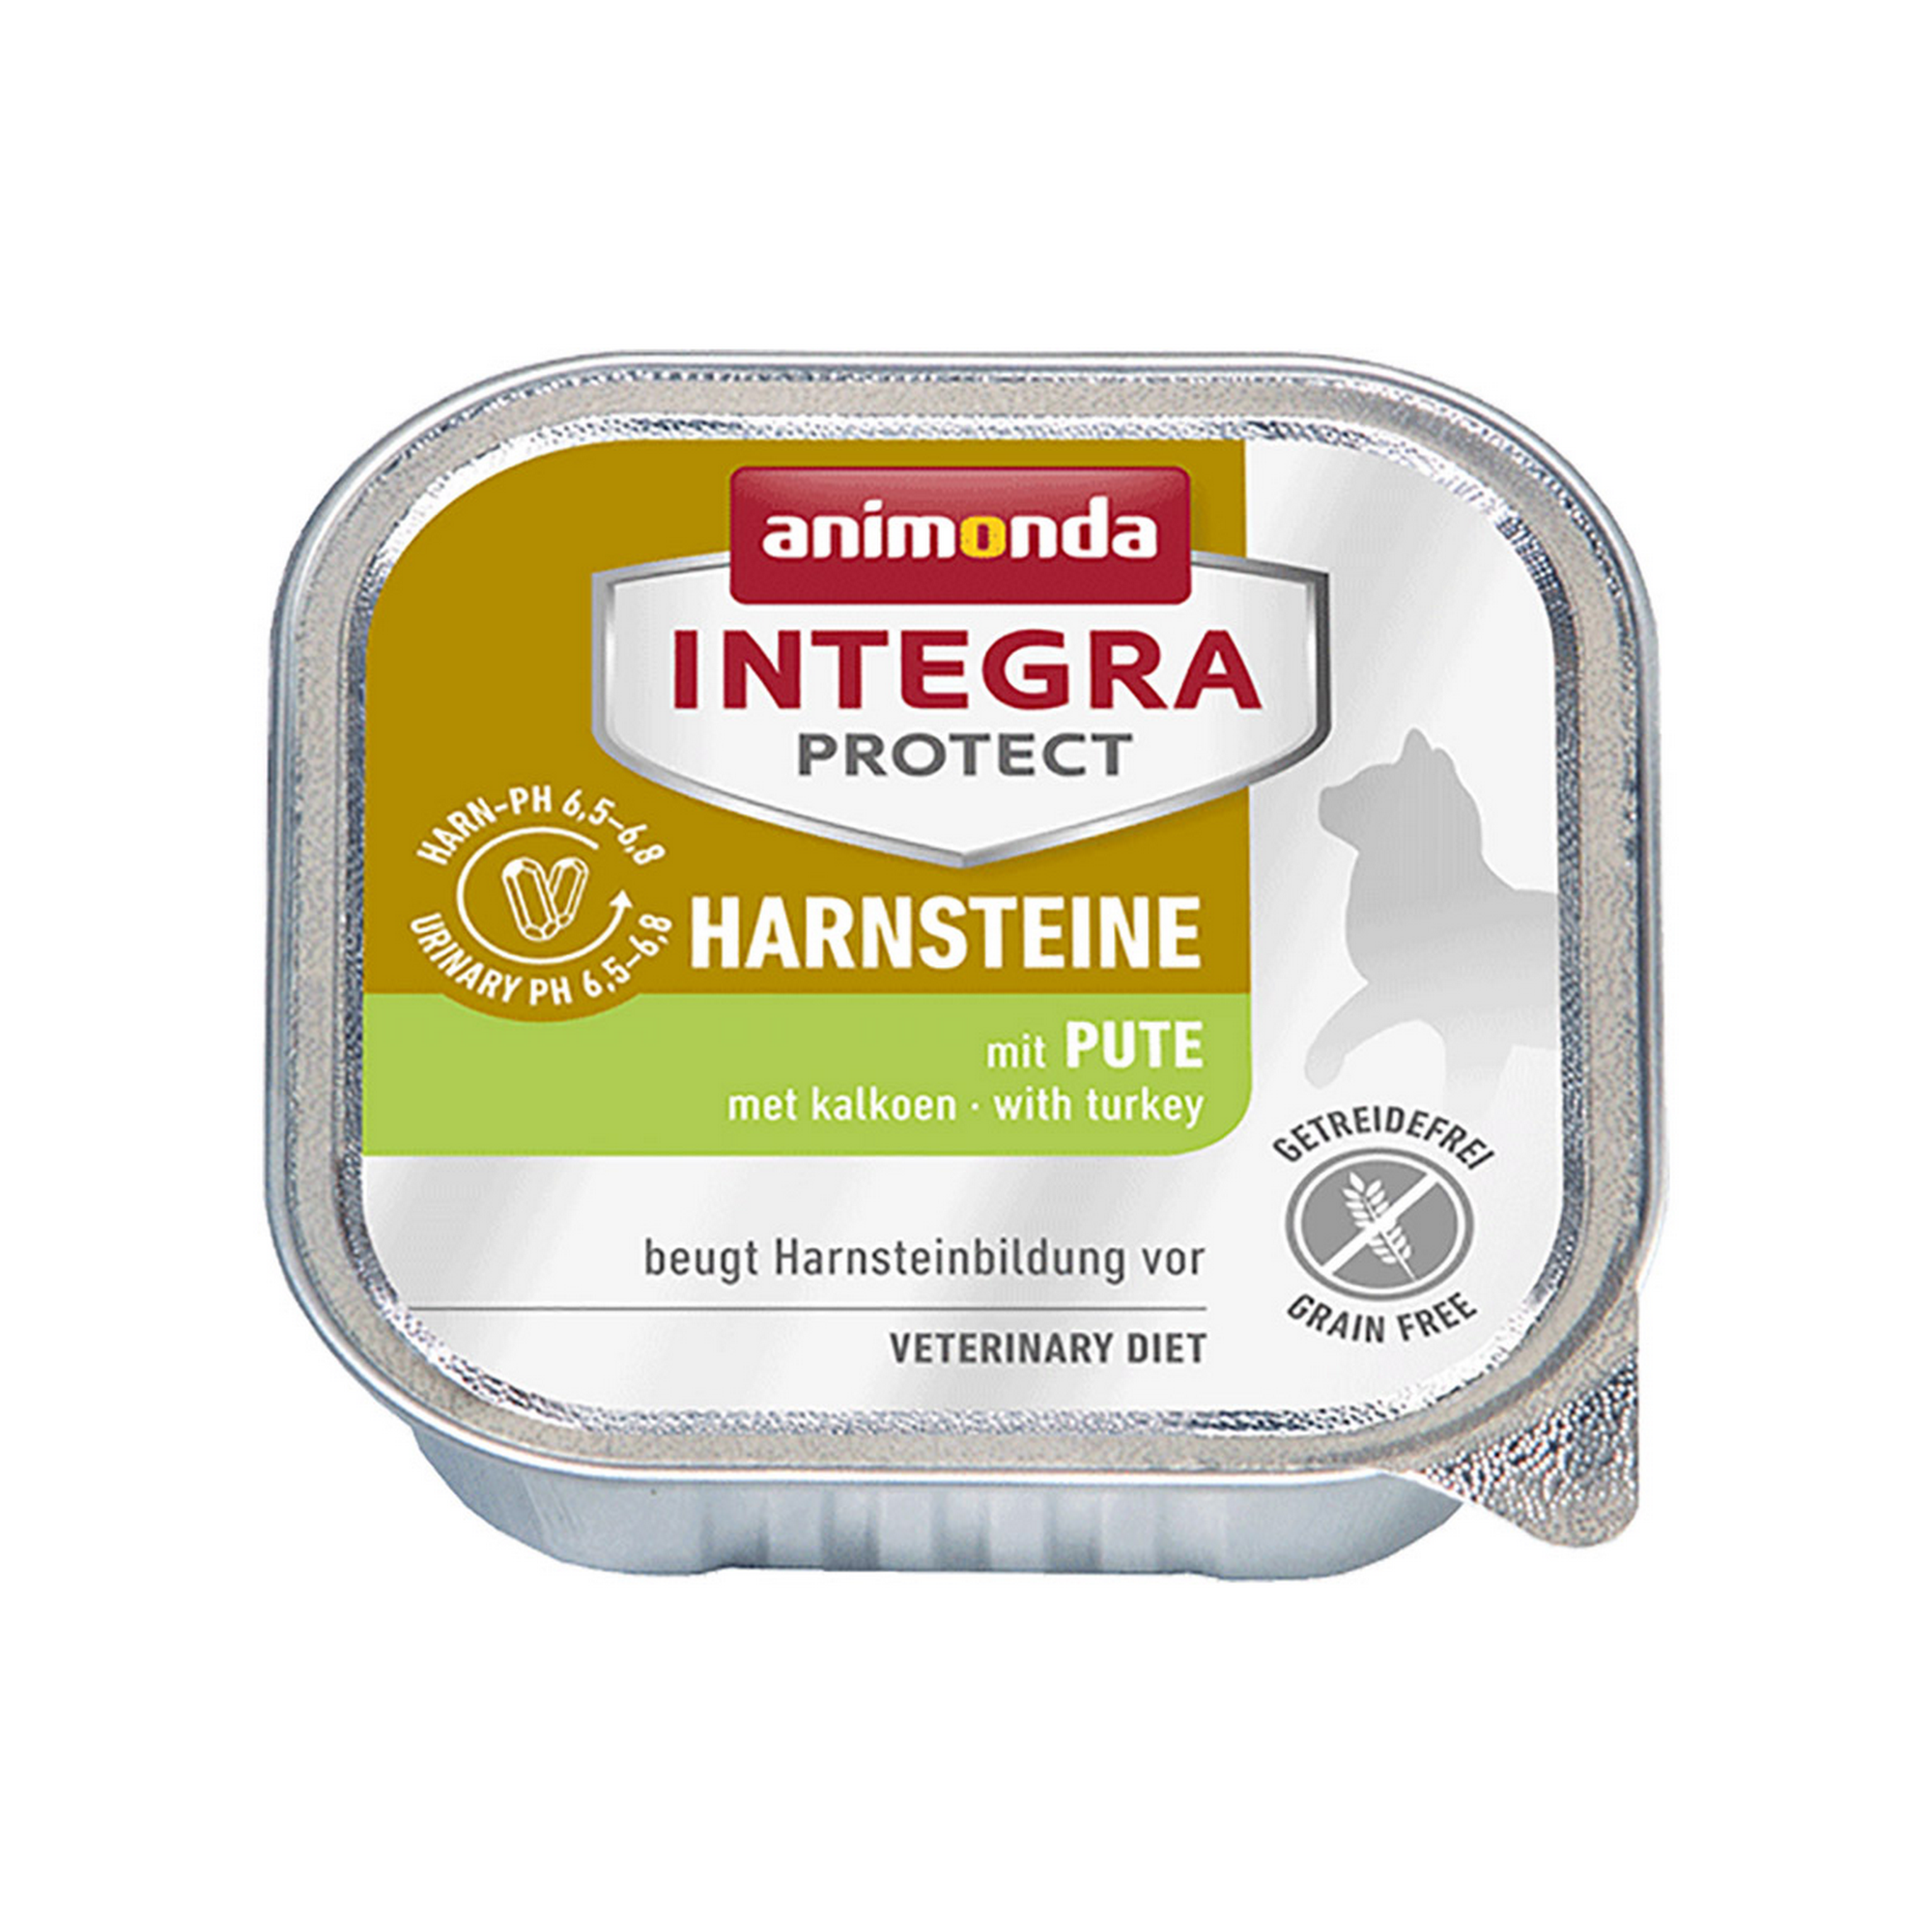 Katzennassfutter 'Integra Protect Harnsteine' Adult, mit Pute und Schwein, 100 g + product picture